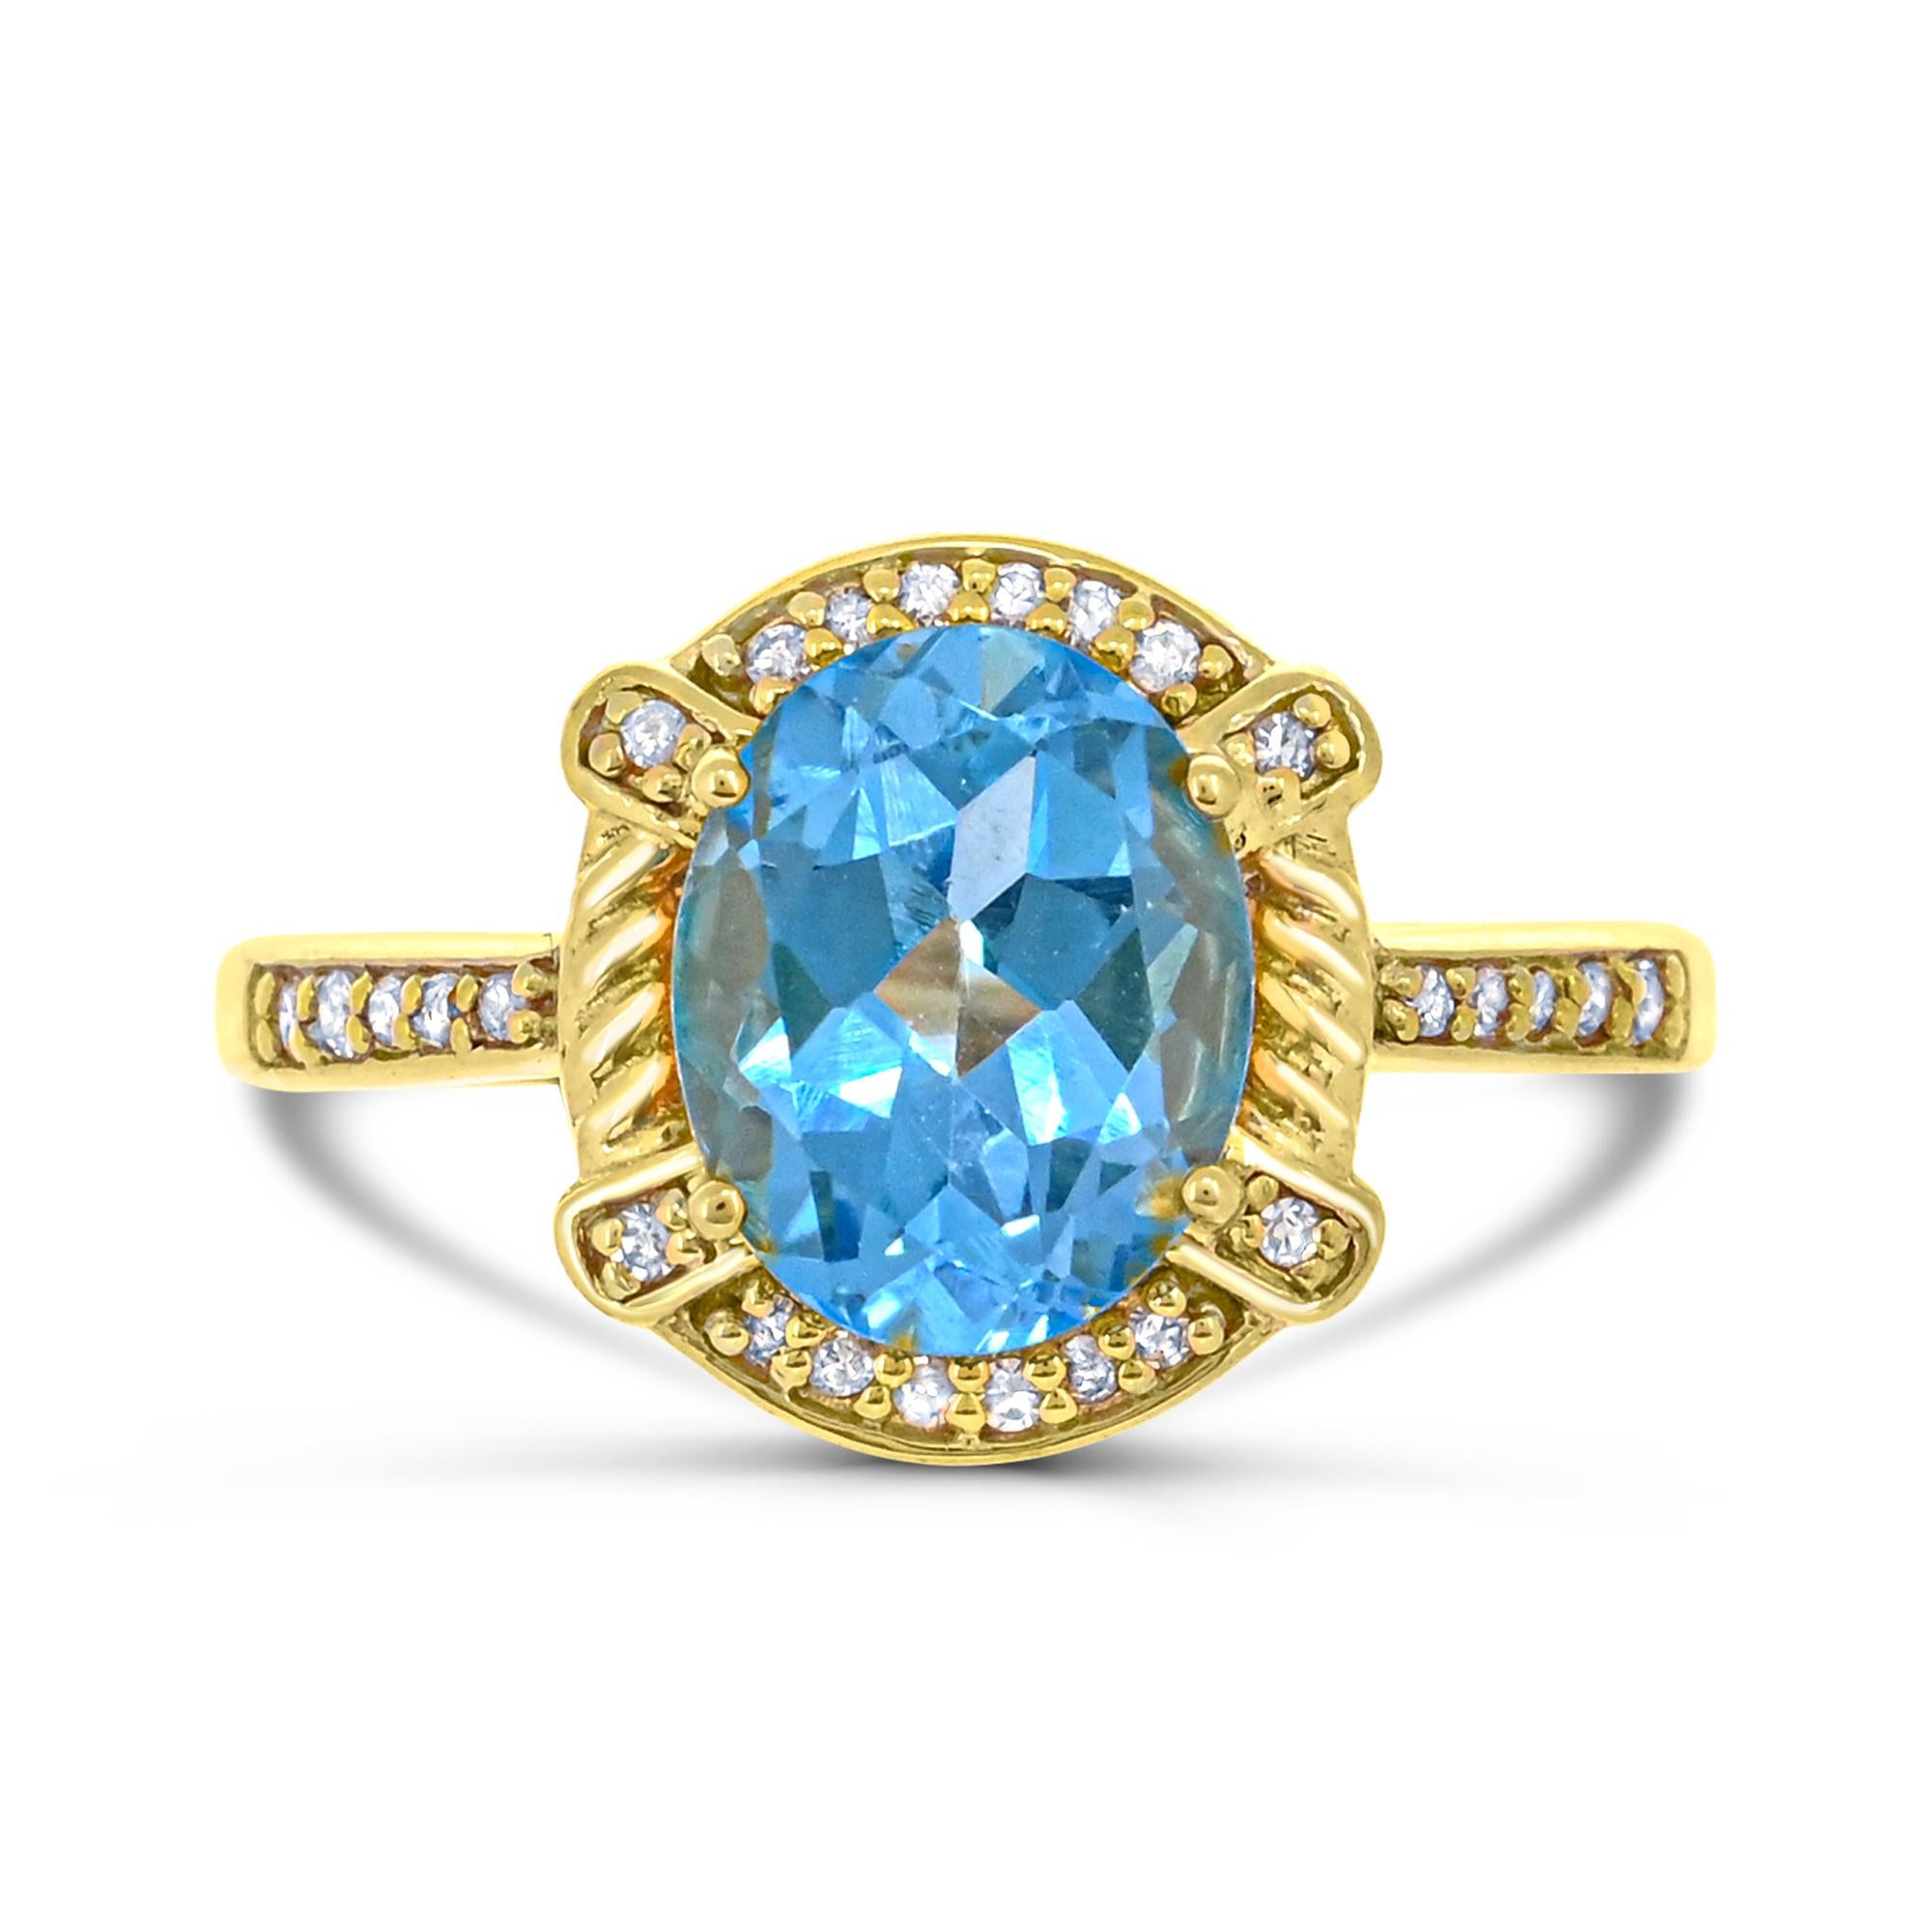 Lassen Sie sich von der Eleganz unseres ovalen Schweizer Blautopas mit rundem weißen Diamanten in 18 Karat Gelbgold und Sterlingsilber verzaubern. Dieser mit viel Liebe zum Detail gefertigte Ring besticht durch eine atemberaubende Kombination aus